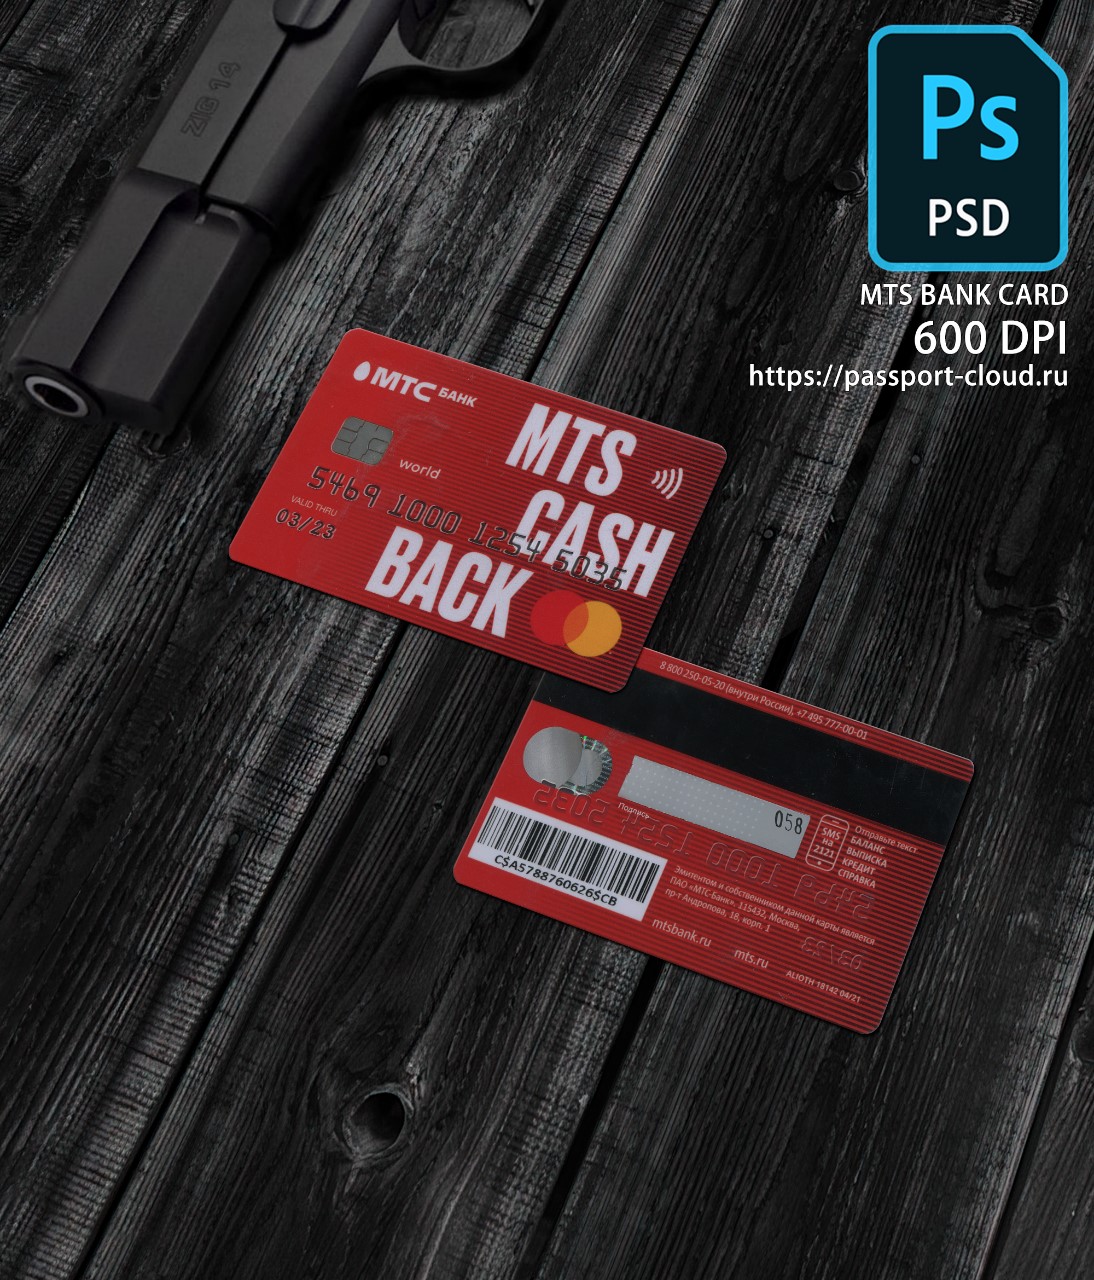 MTS Bank Card PSD1